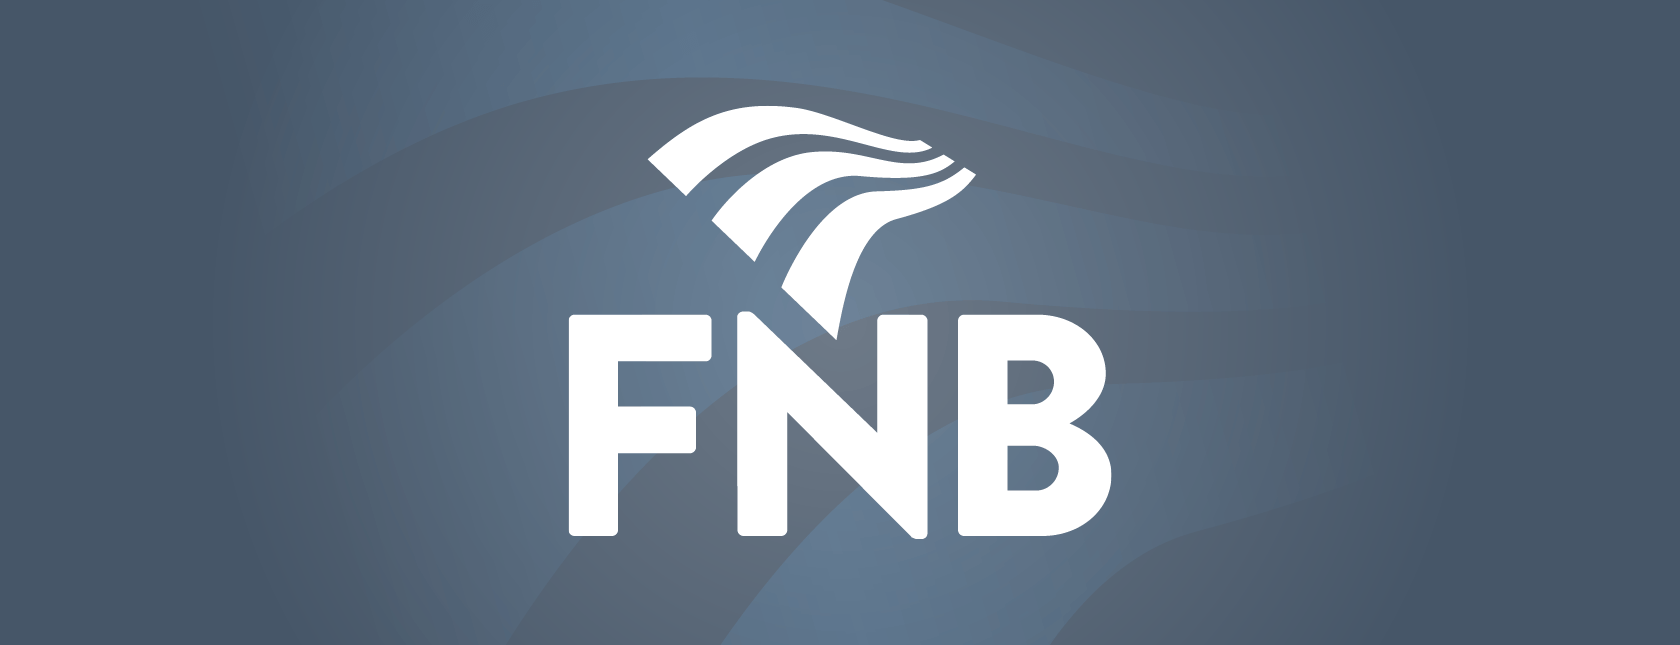 FNB logo FNB logo